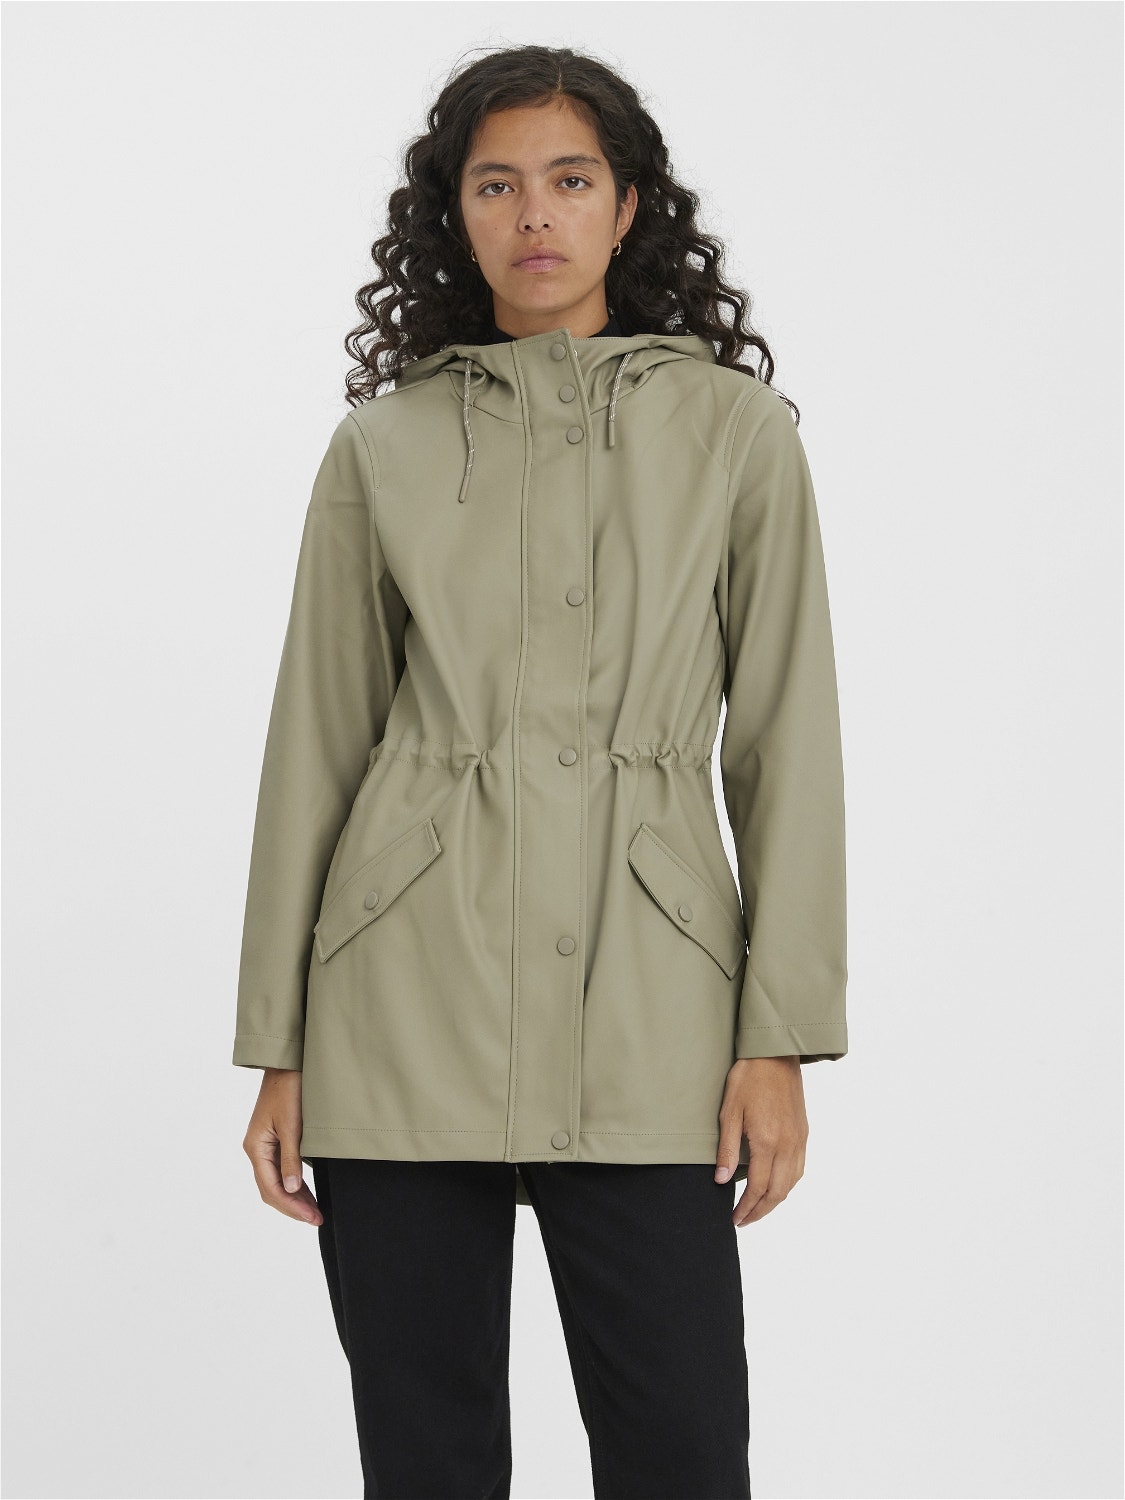 Ondartet and Nogen som helst rain jacket | Medium Grey | Vero Moda®